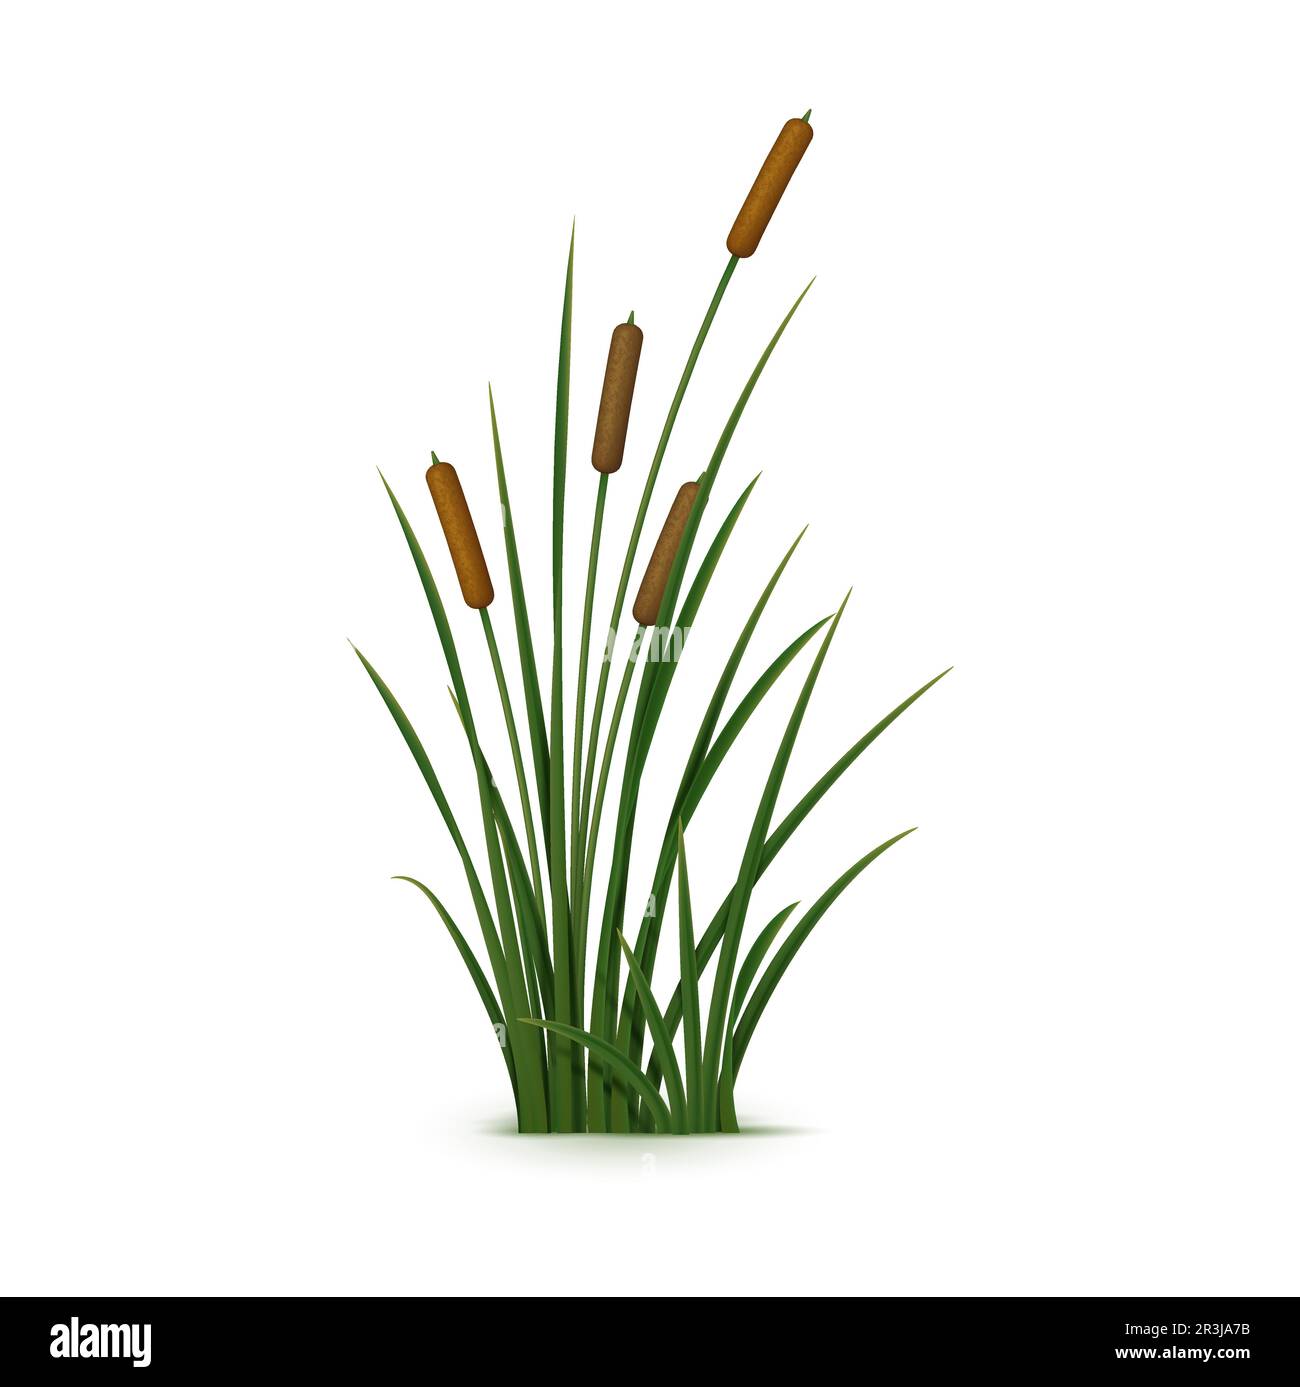 Realistisches Schilf, Sedge und Gras. Isolierte, 3D m hohe, robuste Vektorpflanze, die in Feuchtgebieten und entlang von Wasserkörpern wächst, mit schmalen, zylindrischen Stängeln, unverwechselbaren Samenköpfen und länglichen Blättern Stock Vektor